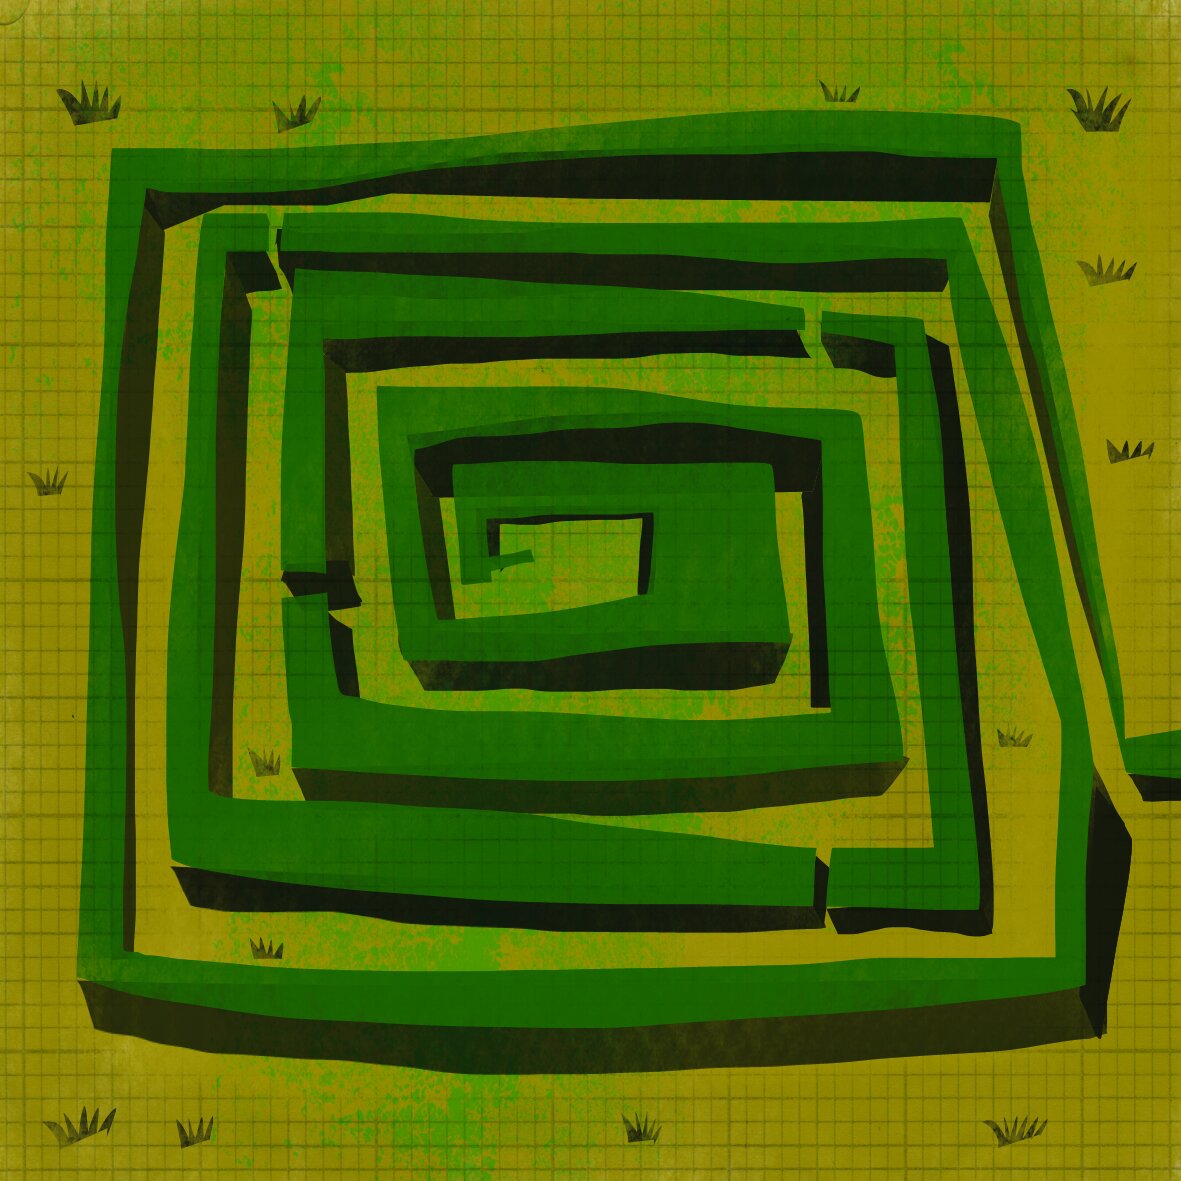 Maze.jpg